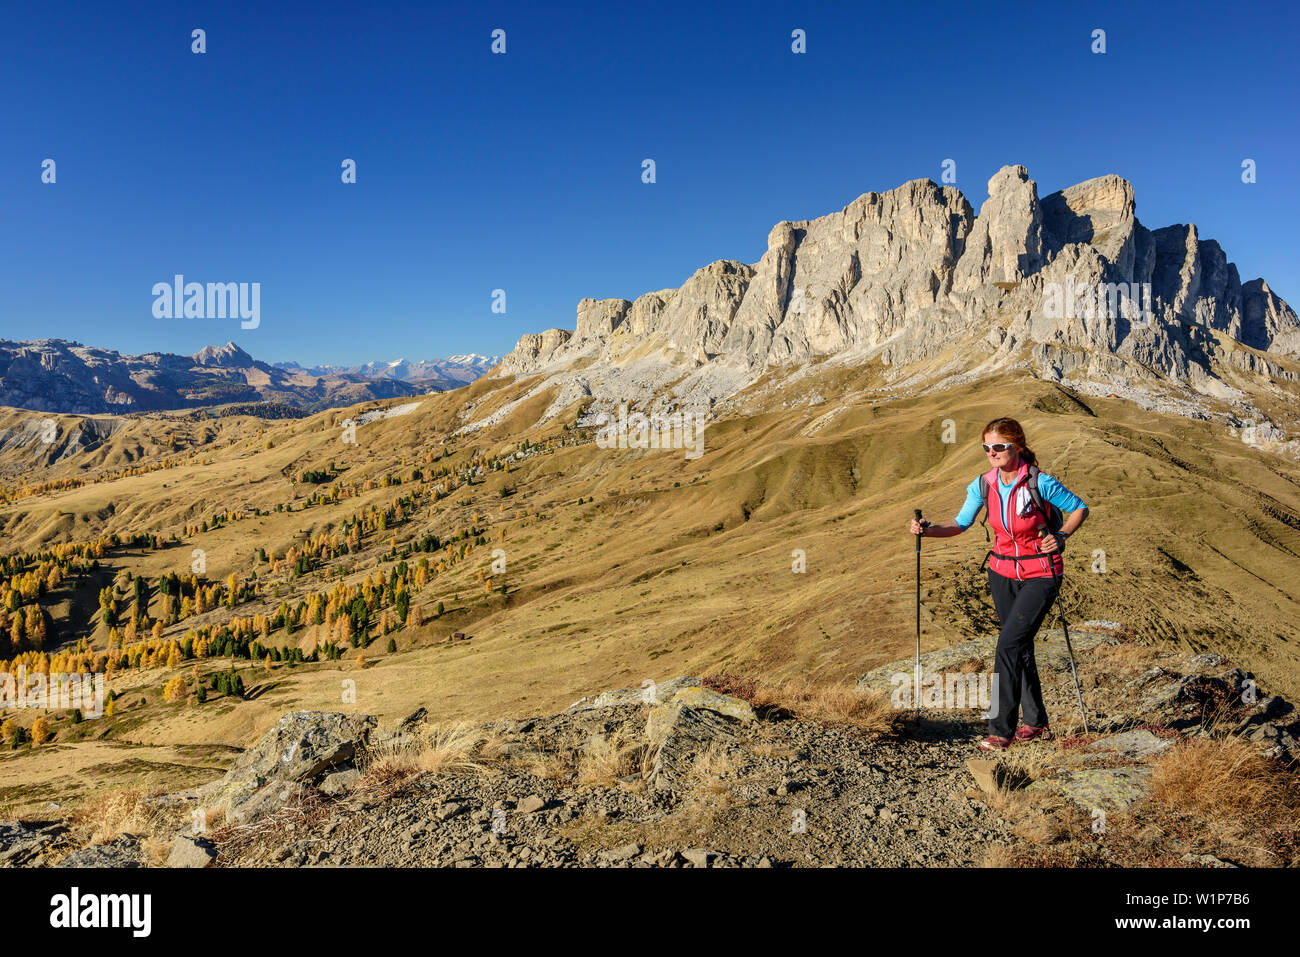 Donna escursionismo salendo verso il Col di Lana, Setsass in background, Col di Lana, Dolomiti, patrimonio mondiale dell UNESCO Dolomiti, Veneto, Italia Foto Stock